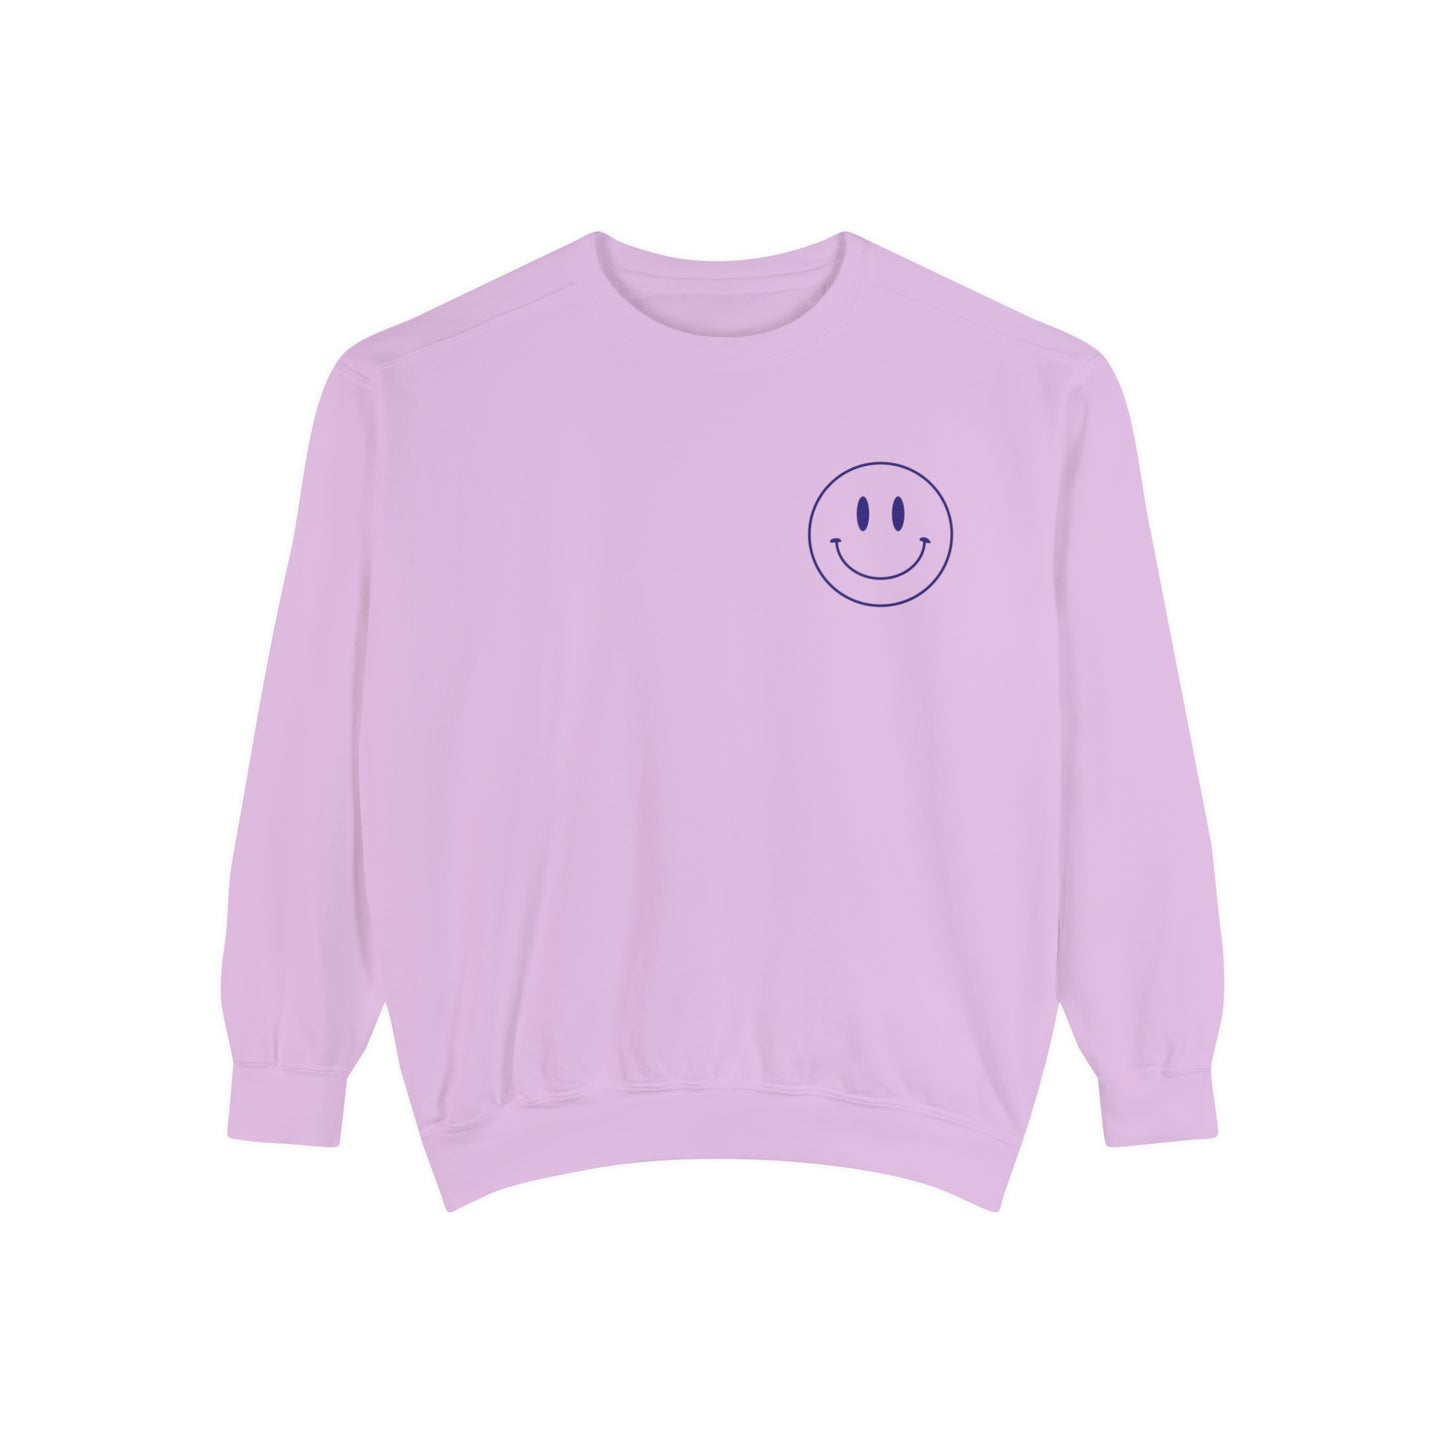 PT Life Smiley Comfort Colors Sweatshirt